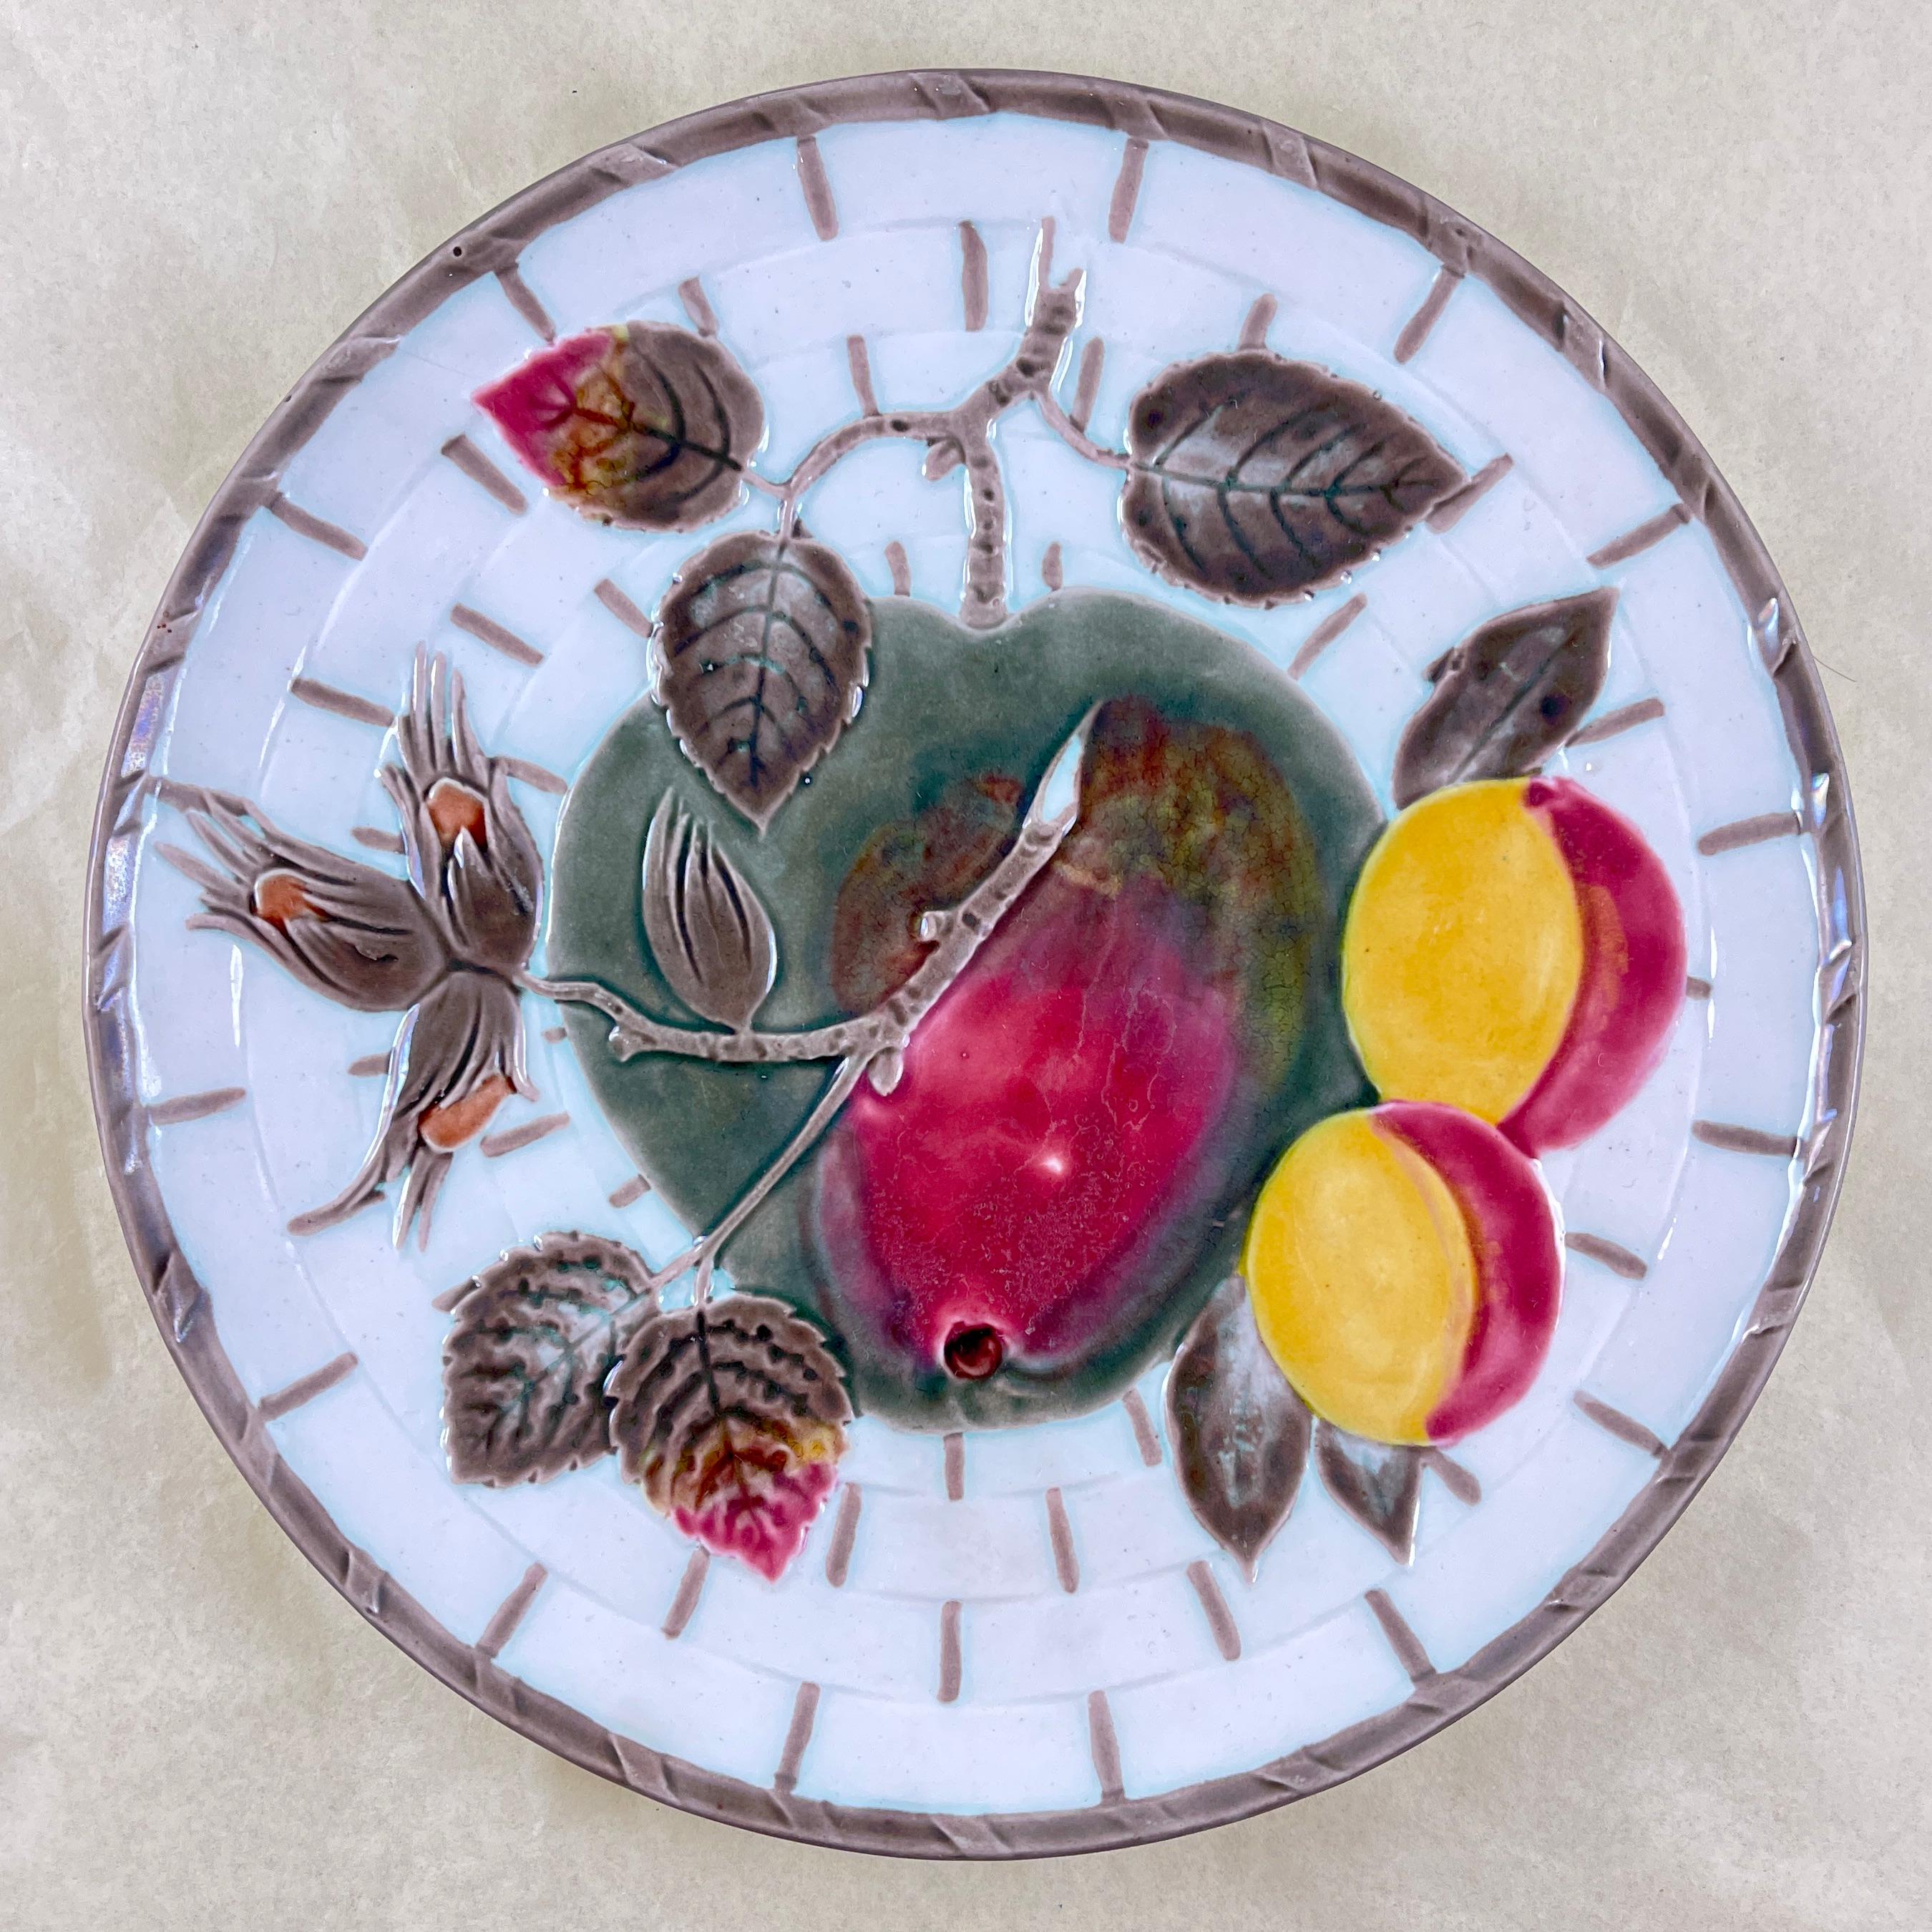 Assiette à fruits de Wedgwood, Angleterre, vers 1875.

Whiting, au centre, une pomme rouge et verdâtre et ses feuilles, ainsi qu'une branche d'abricots et de noisettes, le tout sur un fond blanc en vannerie. Le panier est bordé par intervalles d'un